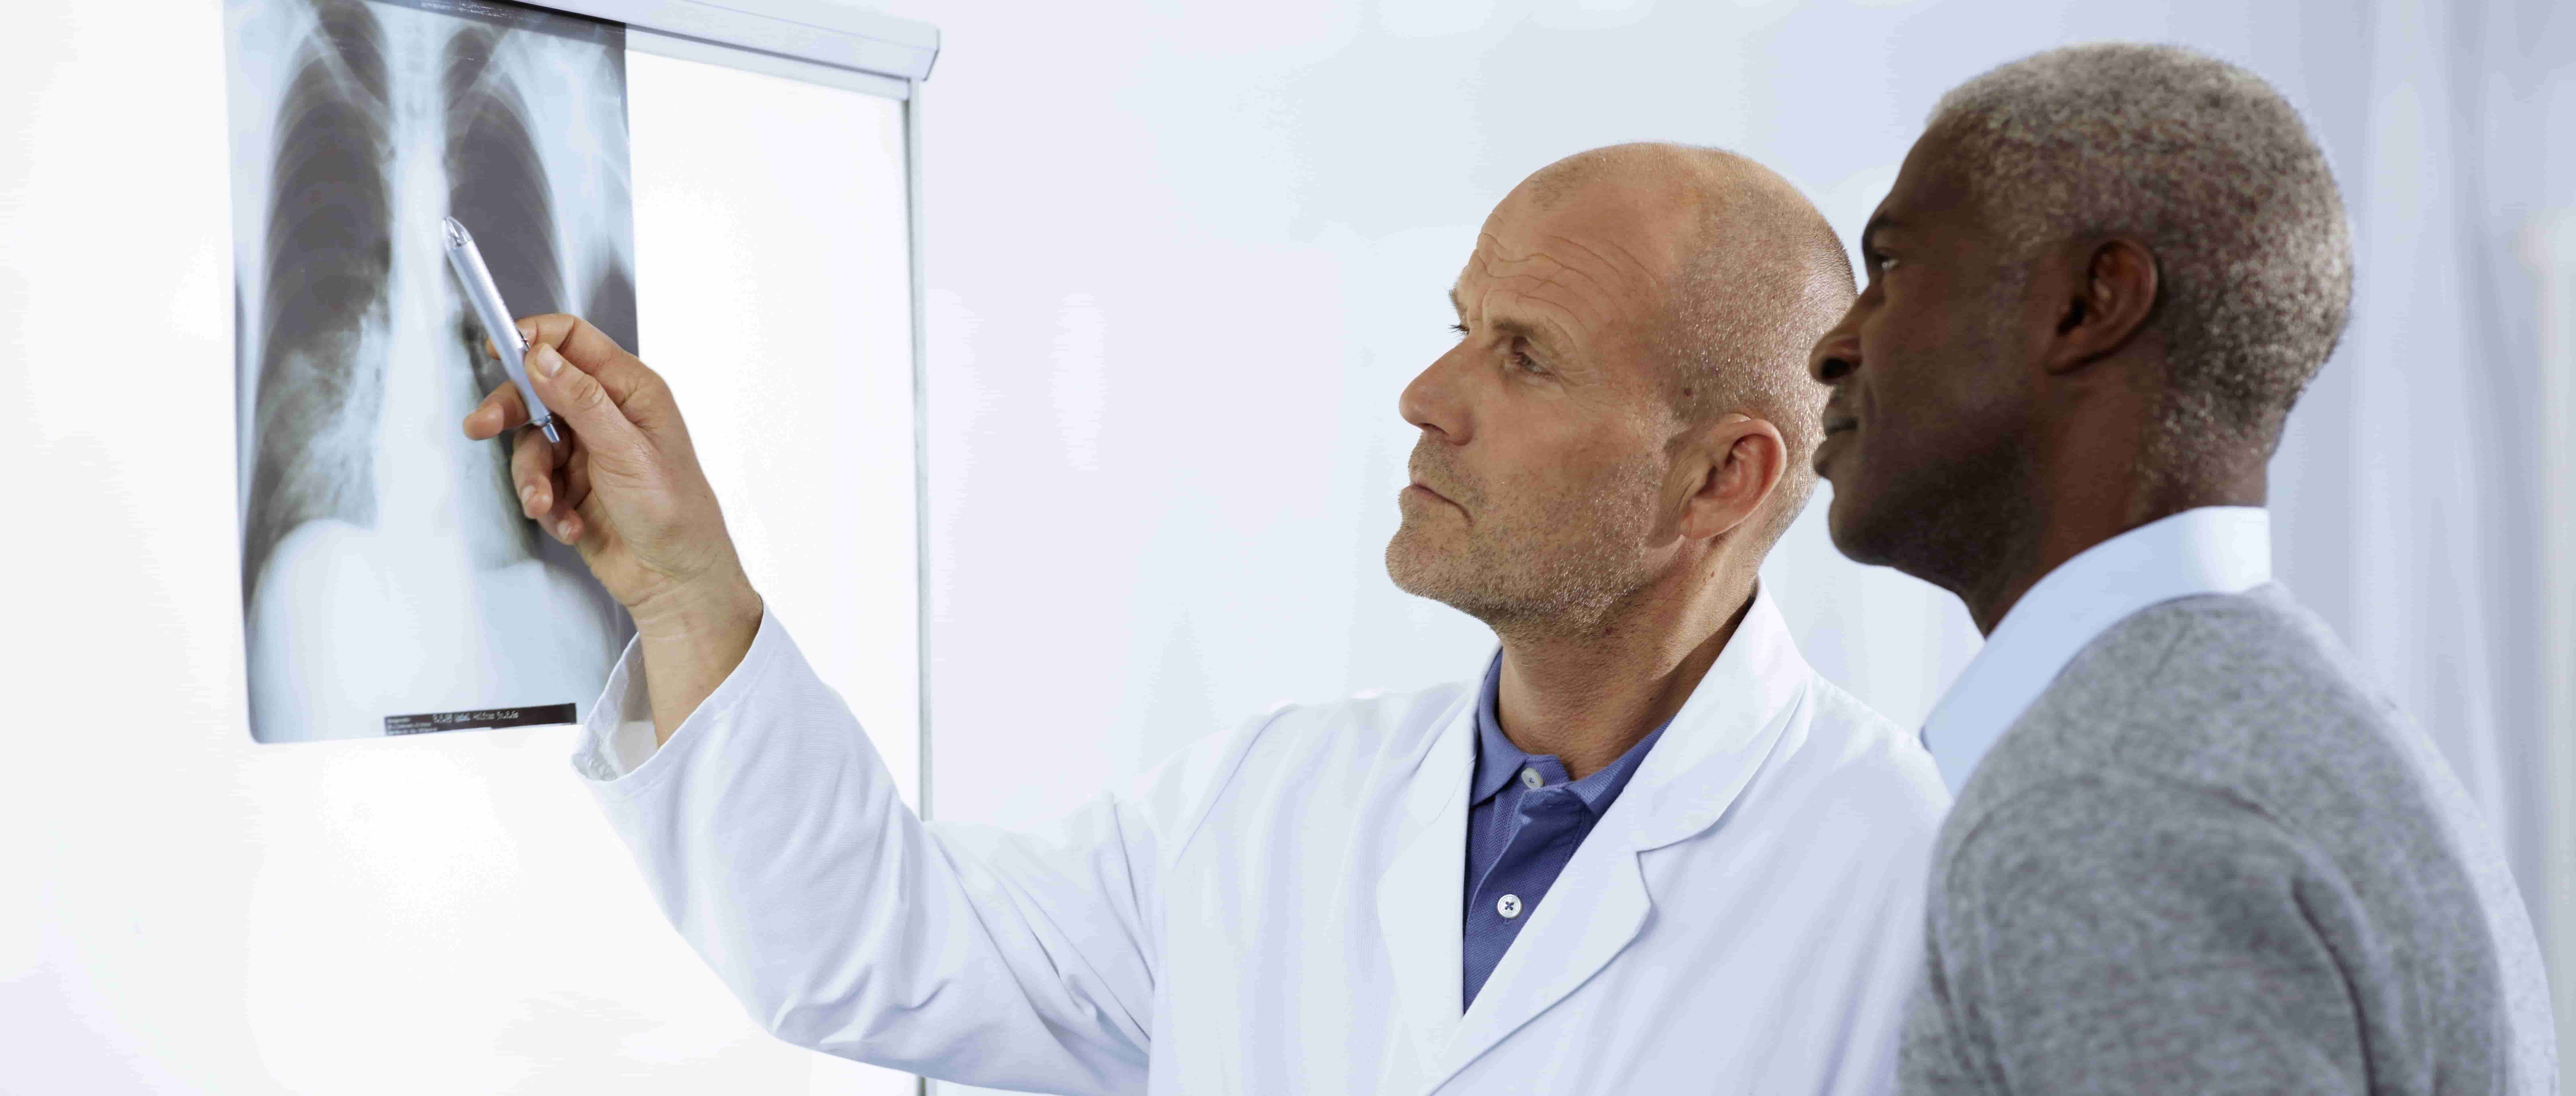 Foto de um médico branco em pé, em um ambiente hospitalar, mostrando a um paciente negro de meia-idade, também de pé, a lâmina de um raio-x em uma tela de luz presa à parede e utilizando um objeto pontiagudo